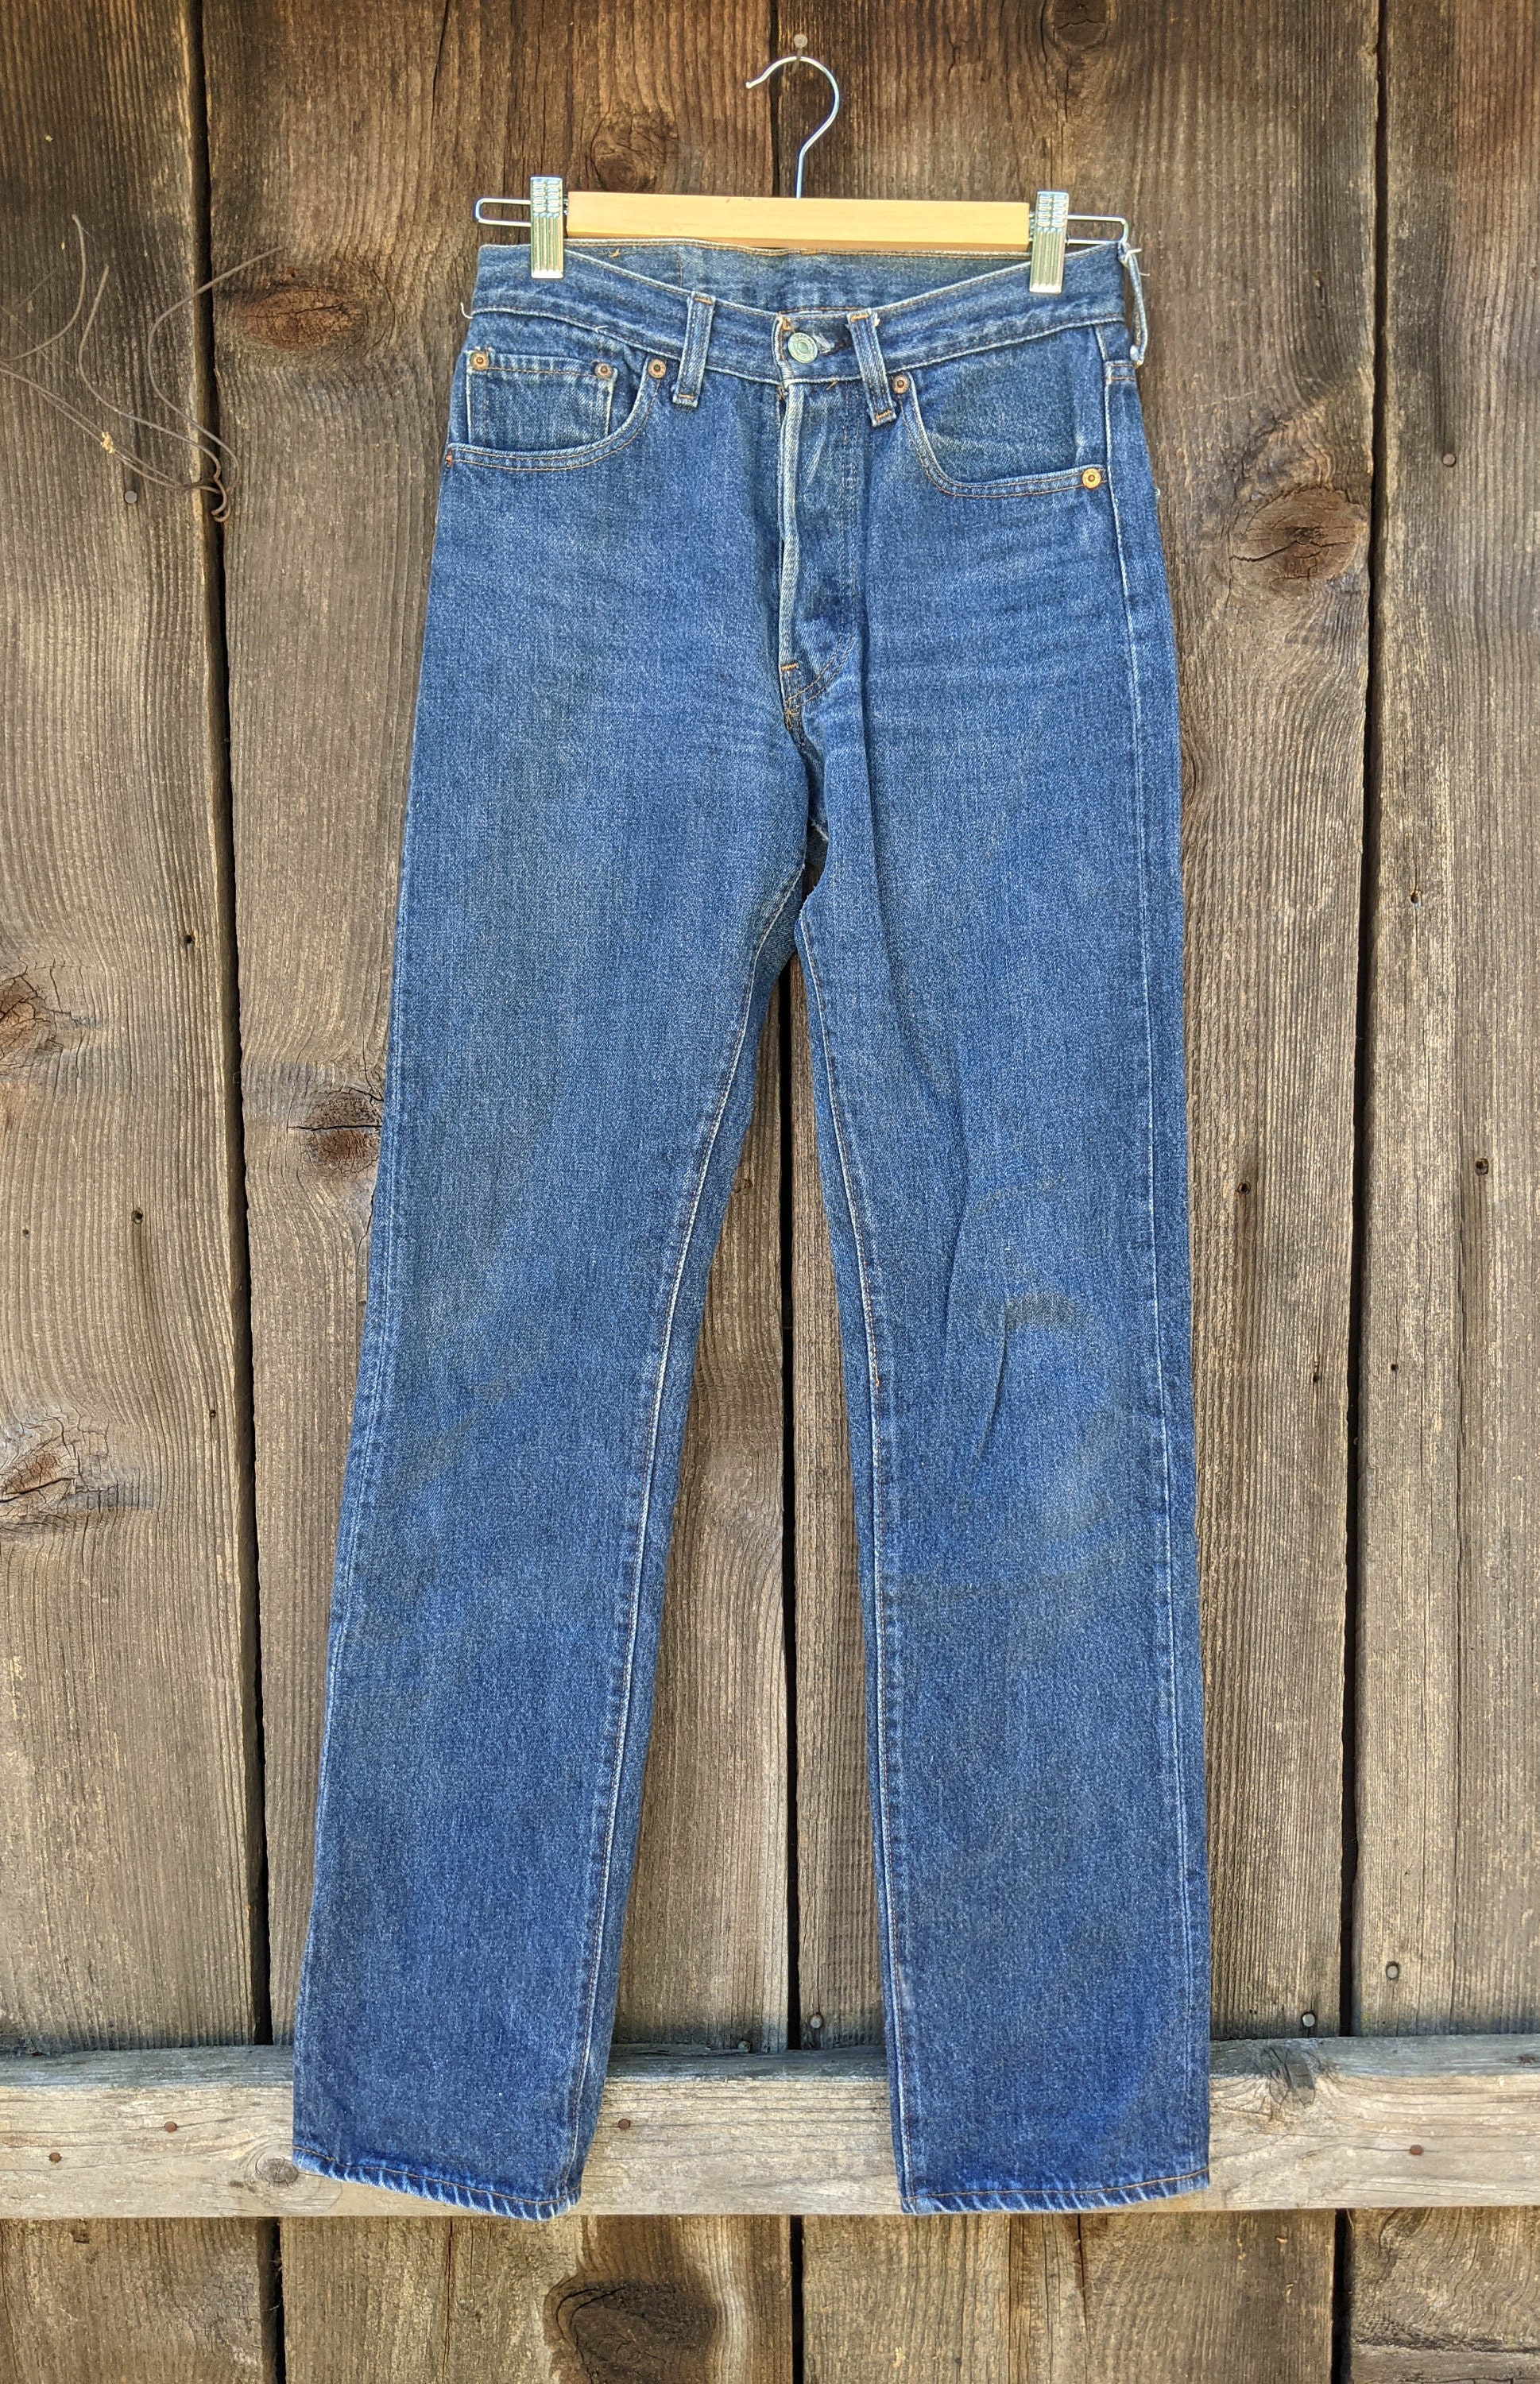 Shop for Vintage 90's Blue Men Jeans